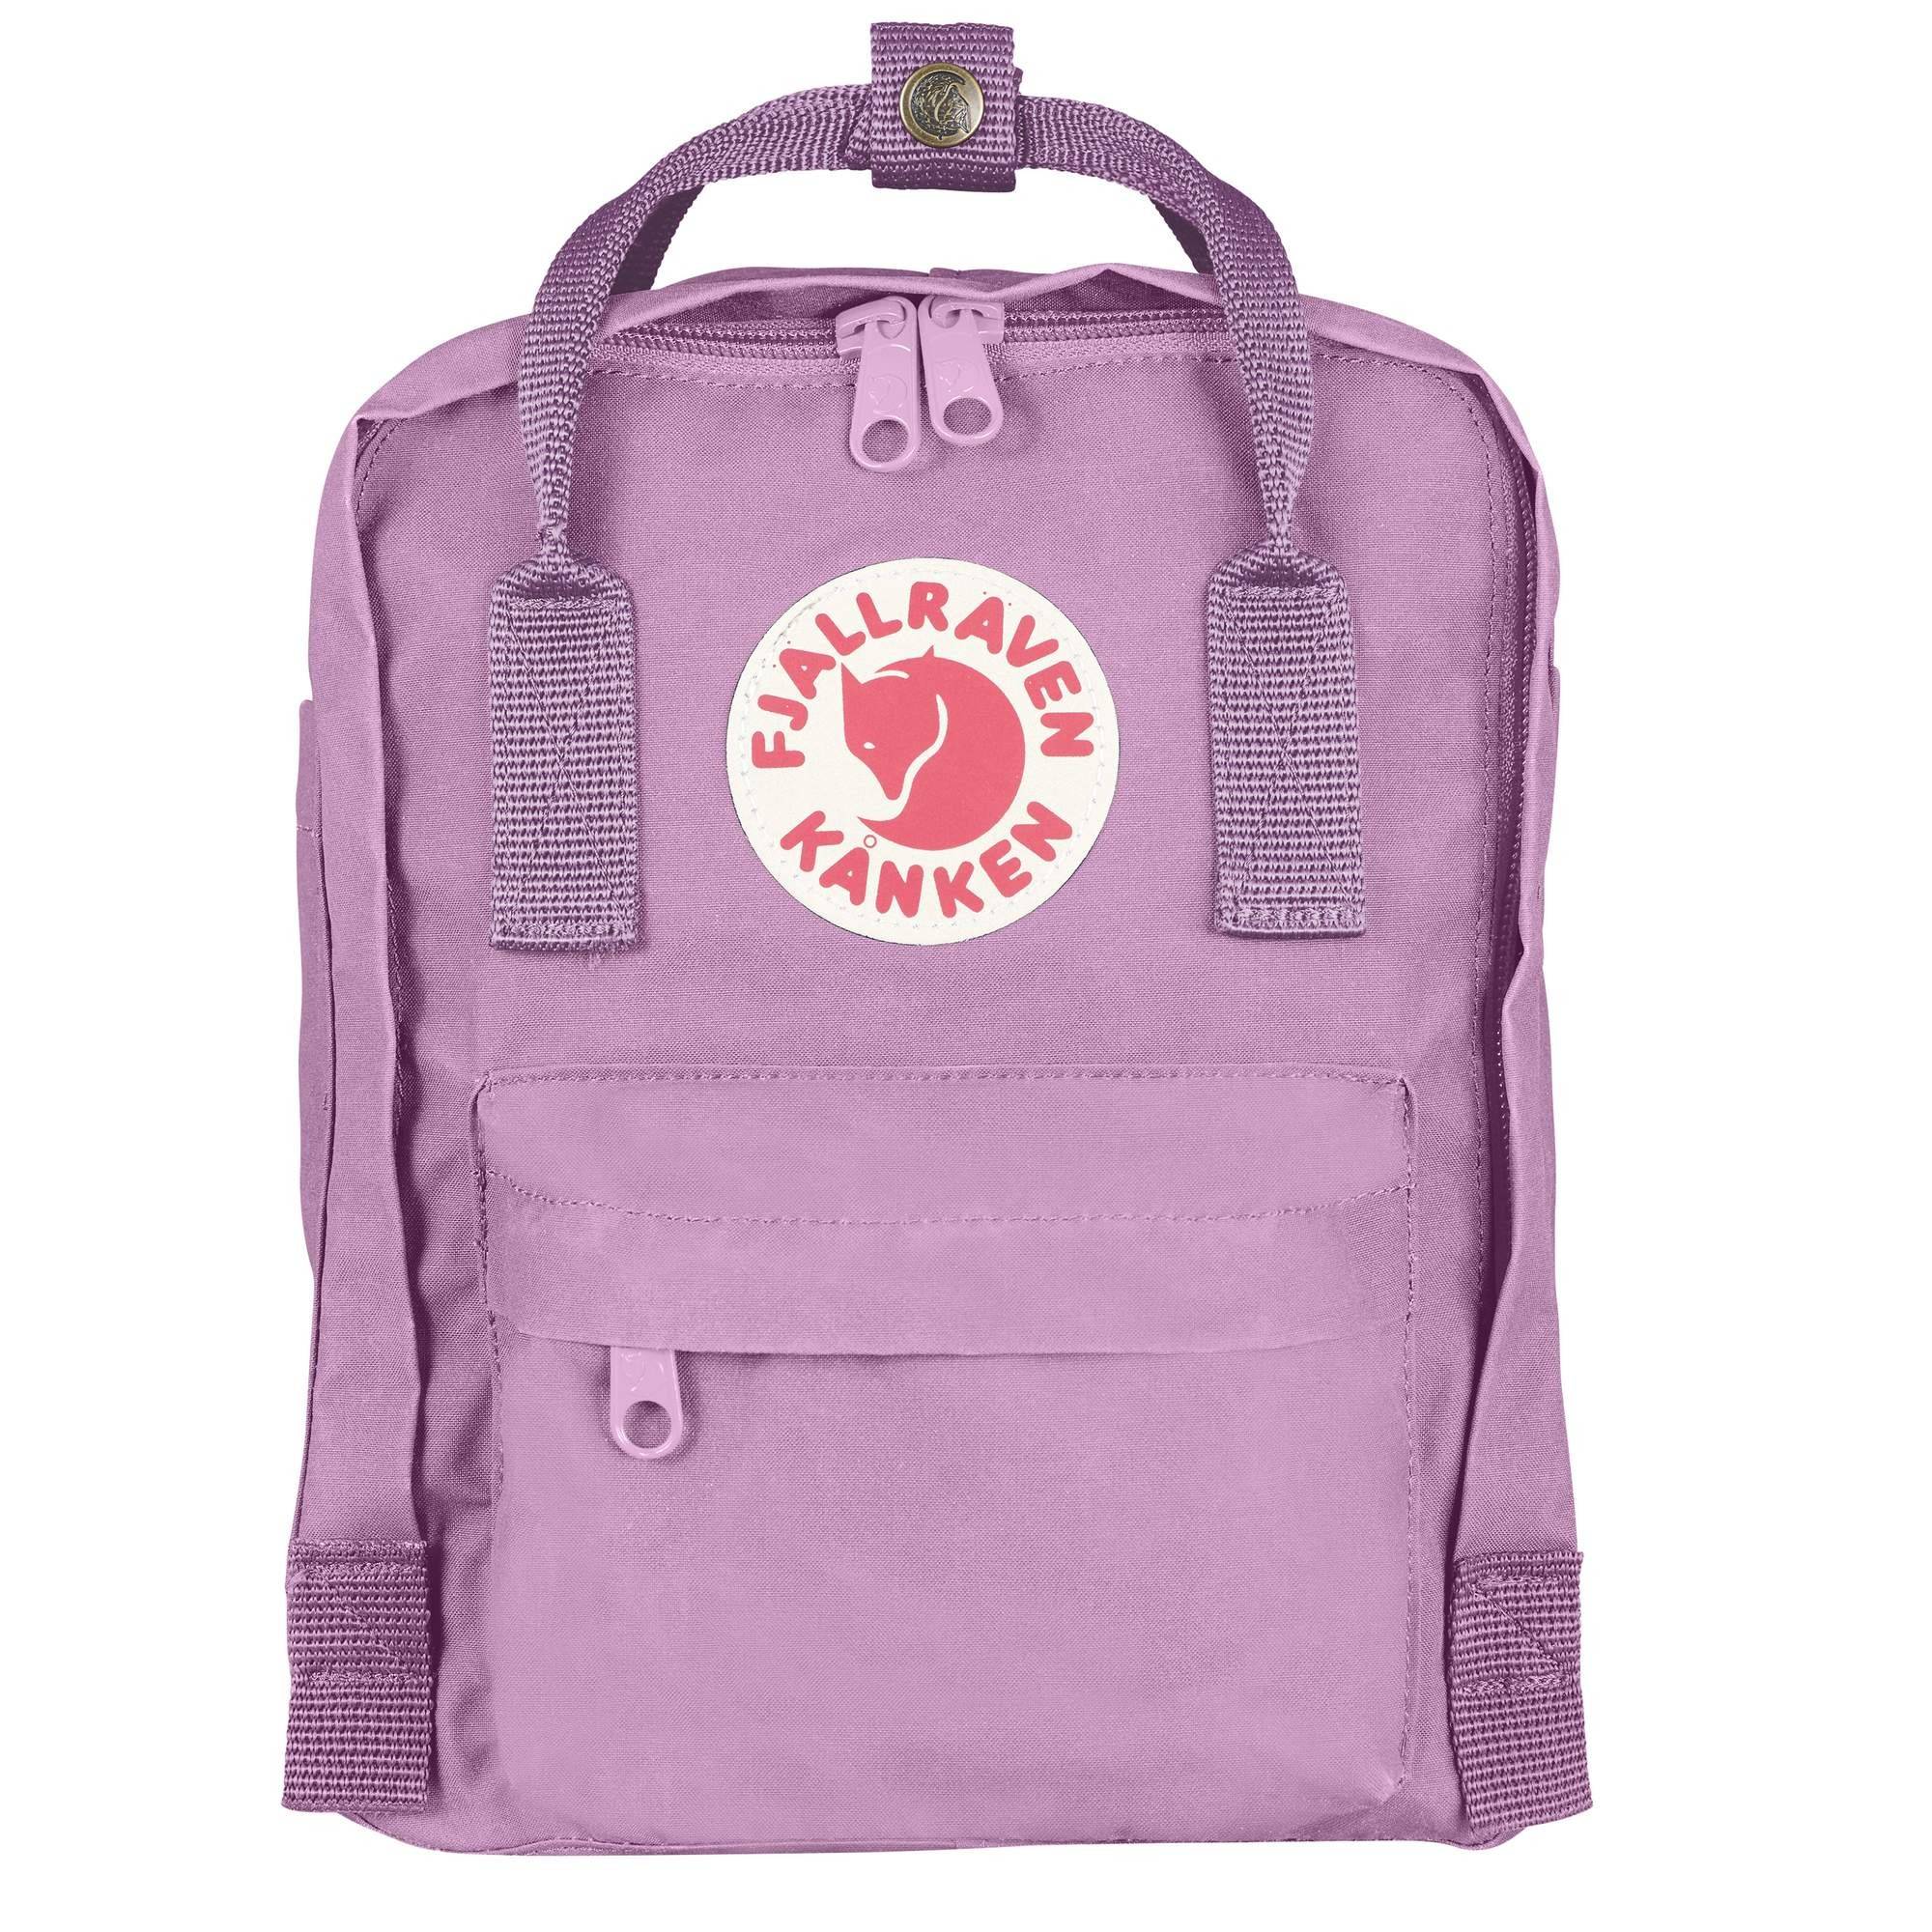 Petit sac à dos Fjallraven Kanken Mini 23561 462 Orchid (Violet pastel)